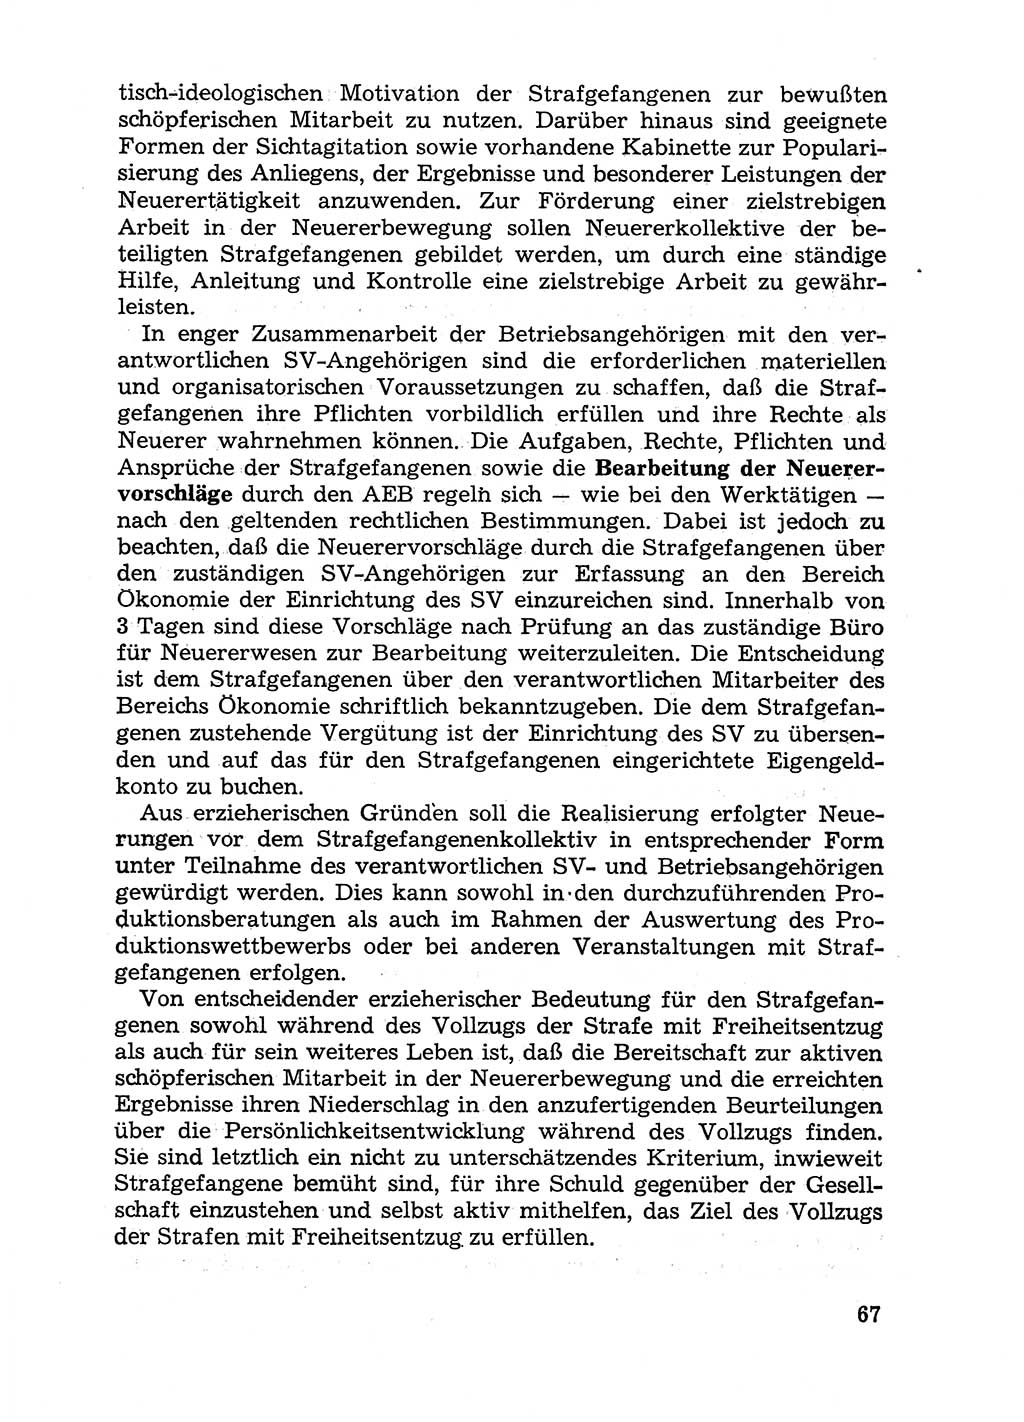 Handbuch für Betriebsangehörige, Abteilung Strafvollzug (SV) [Ministerium des Innern (MdI) Deutsche Demokratische Republik (DDR)] 1981, Seite 67 (Hb. BA Abt. SV MdI DDR 1981, S. 67)